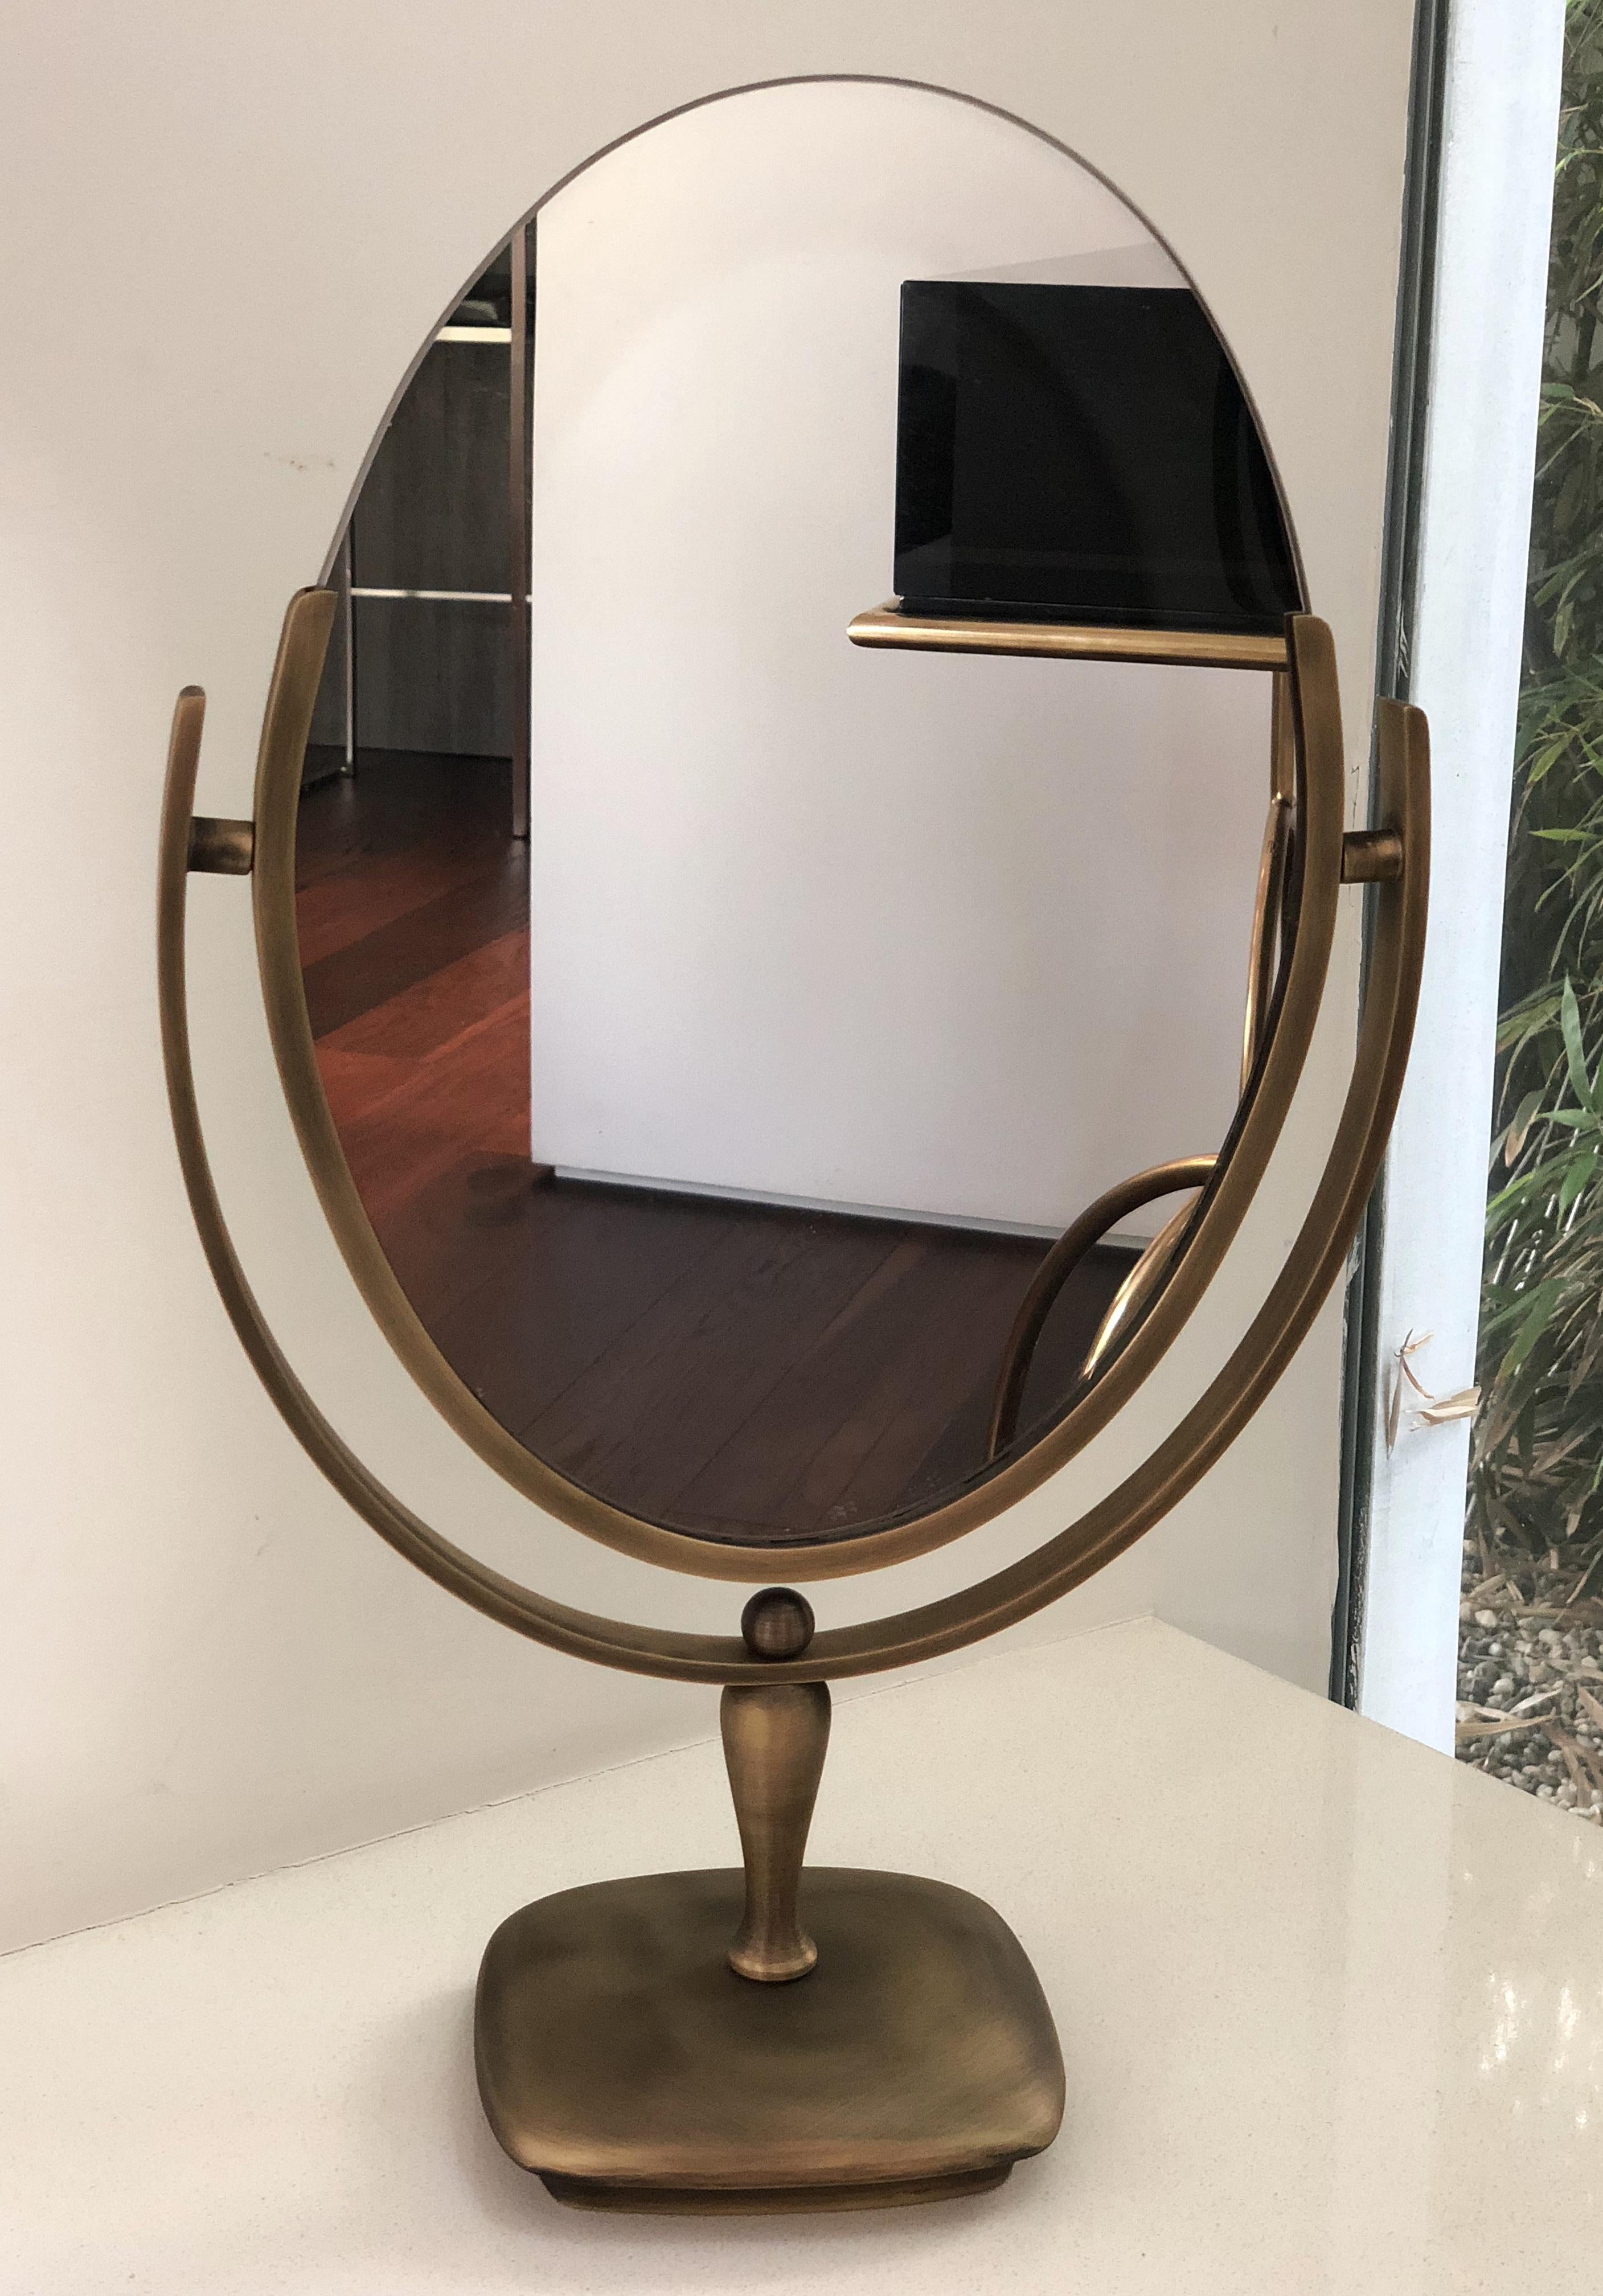 Wir präsentieren den Vintage Vanity Mirror in Antique Brass von Charles Hollis Jones, ein zeitloses Stück amerikanischer Handwerkskunst aus dem Jahr 1968. Dieser exquisite Spiegel strahlt Luxus und Raffinesse aus und ist damit die perfekte Ergänzung